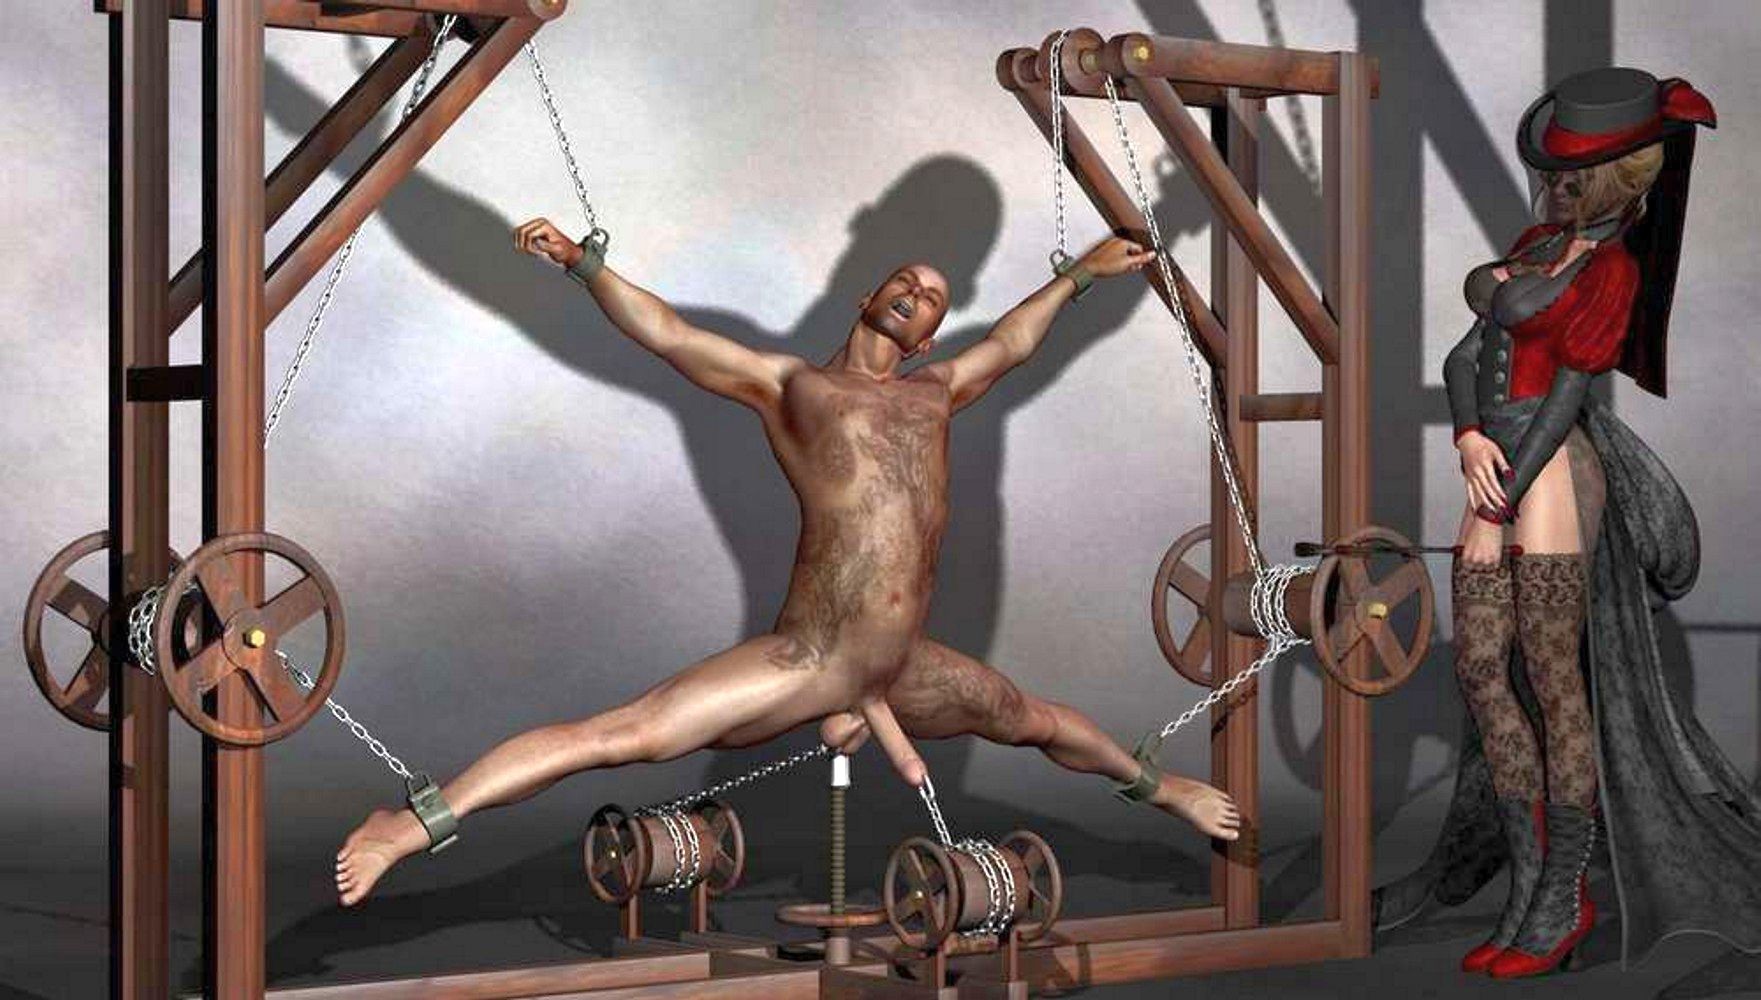 Men bondage by weman